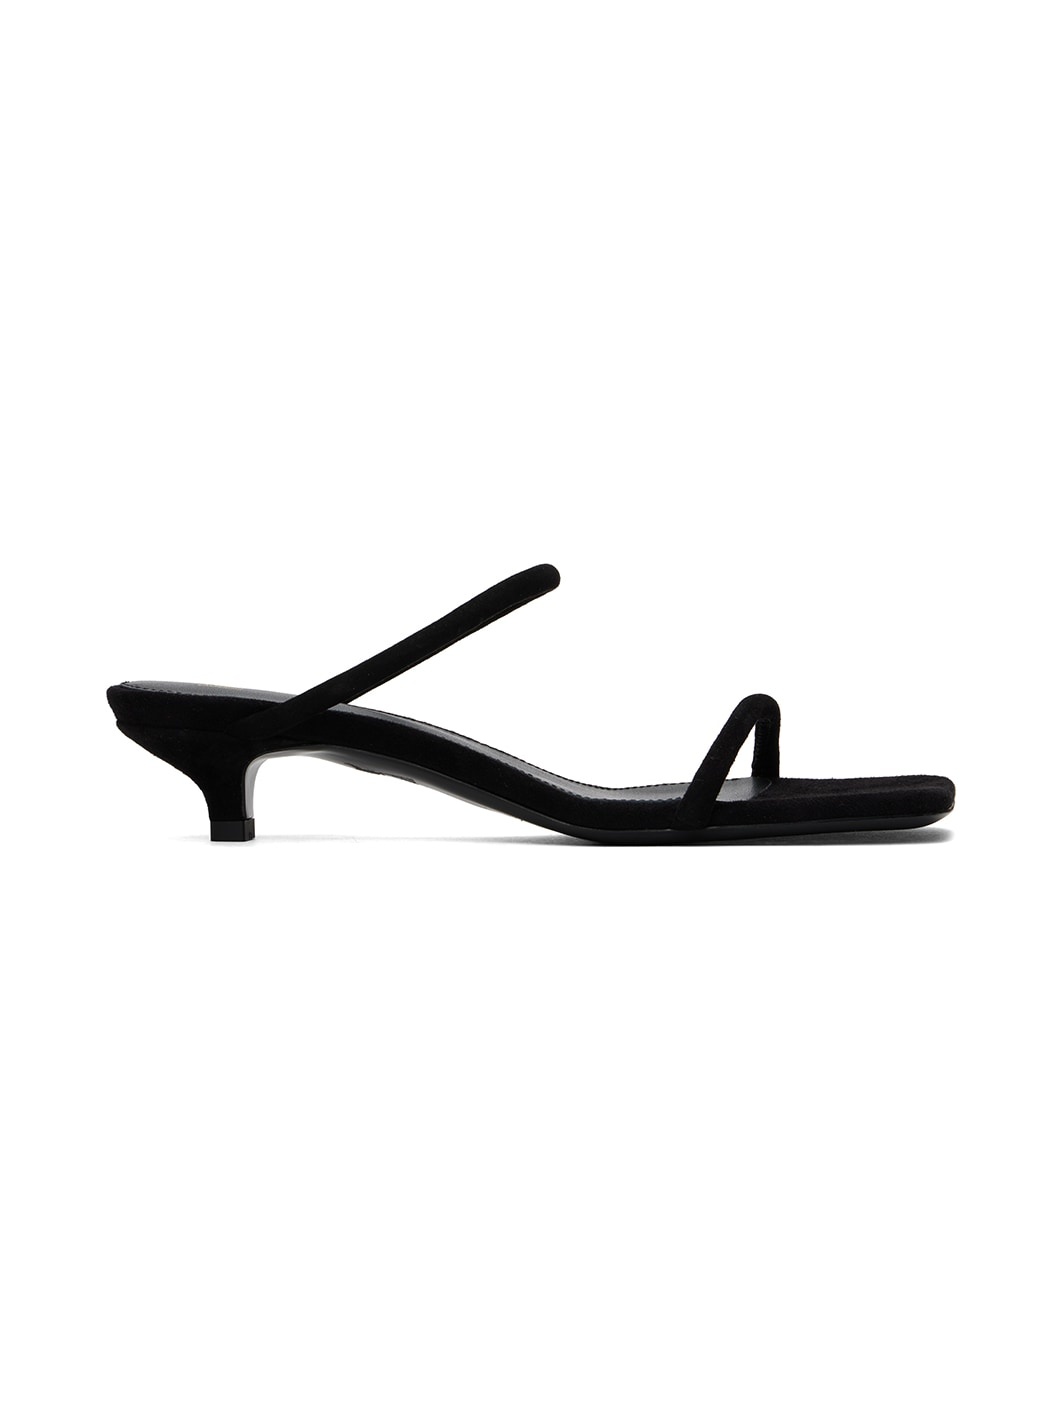 Black 'The Minimalist' Heeled Sandals - 1